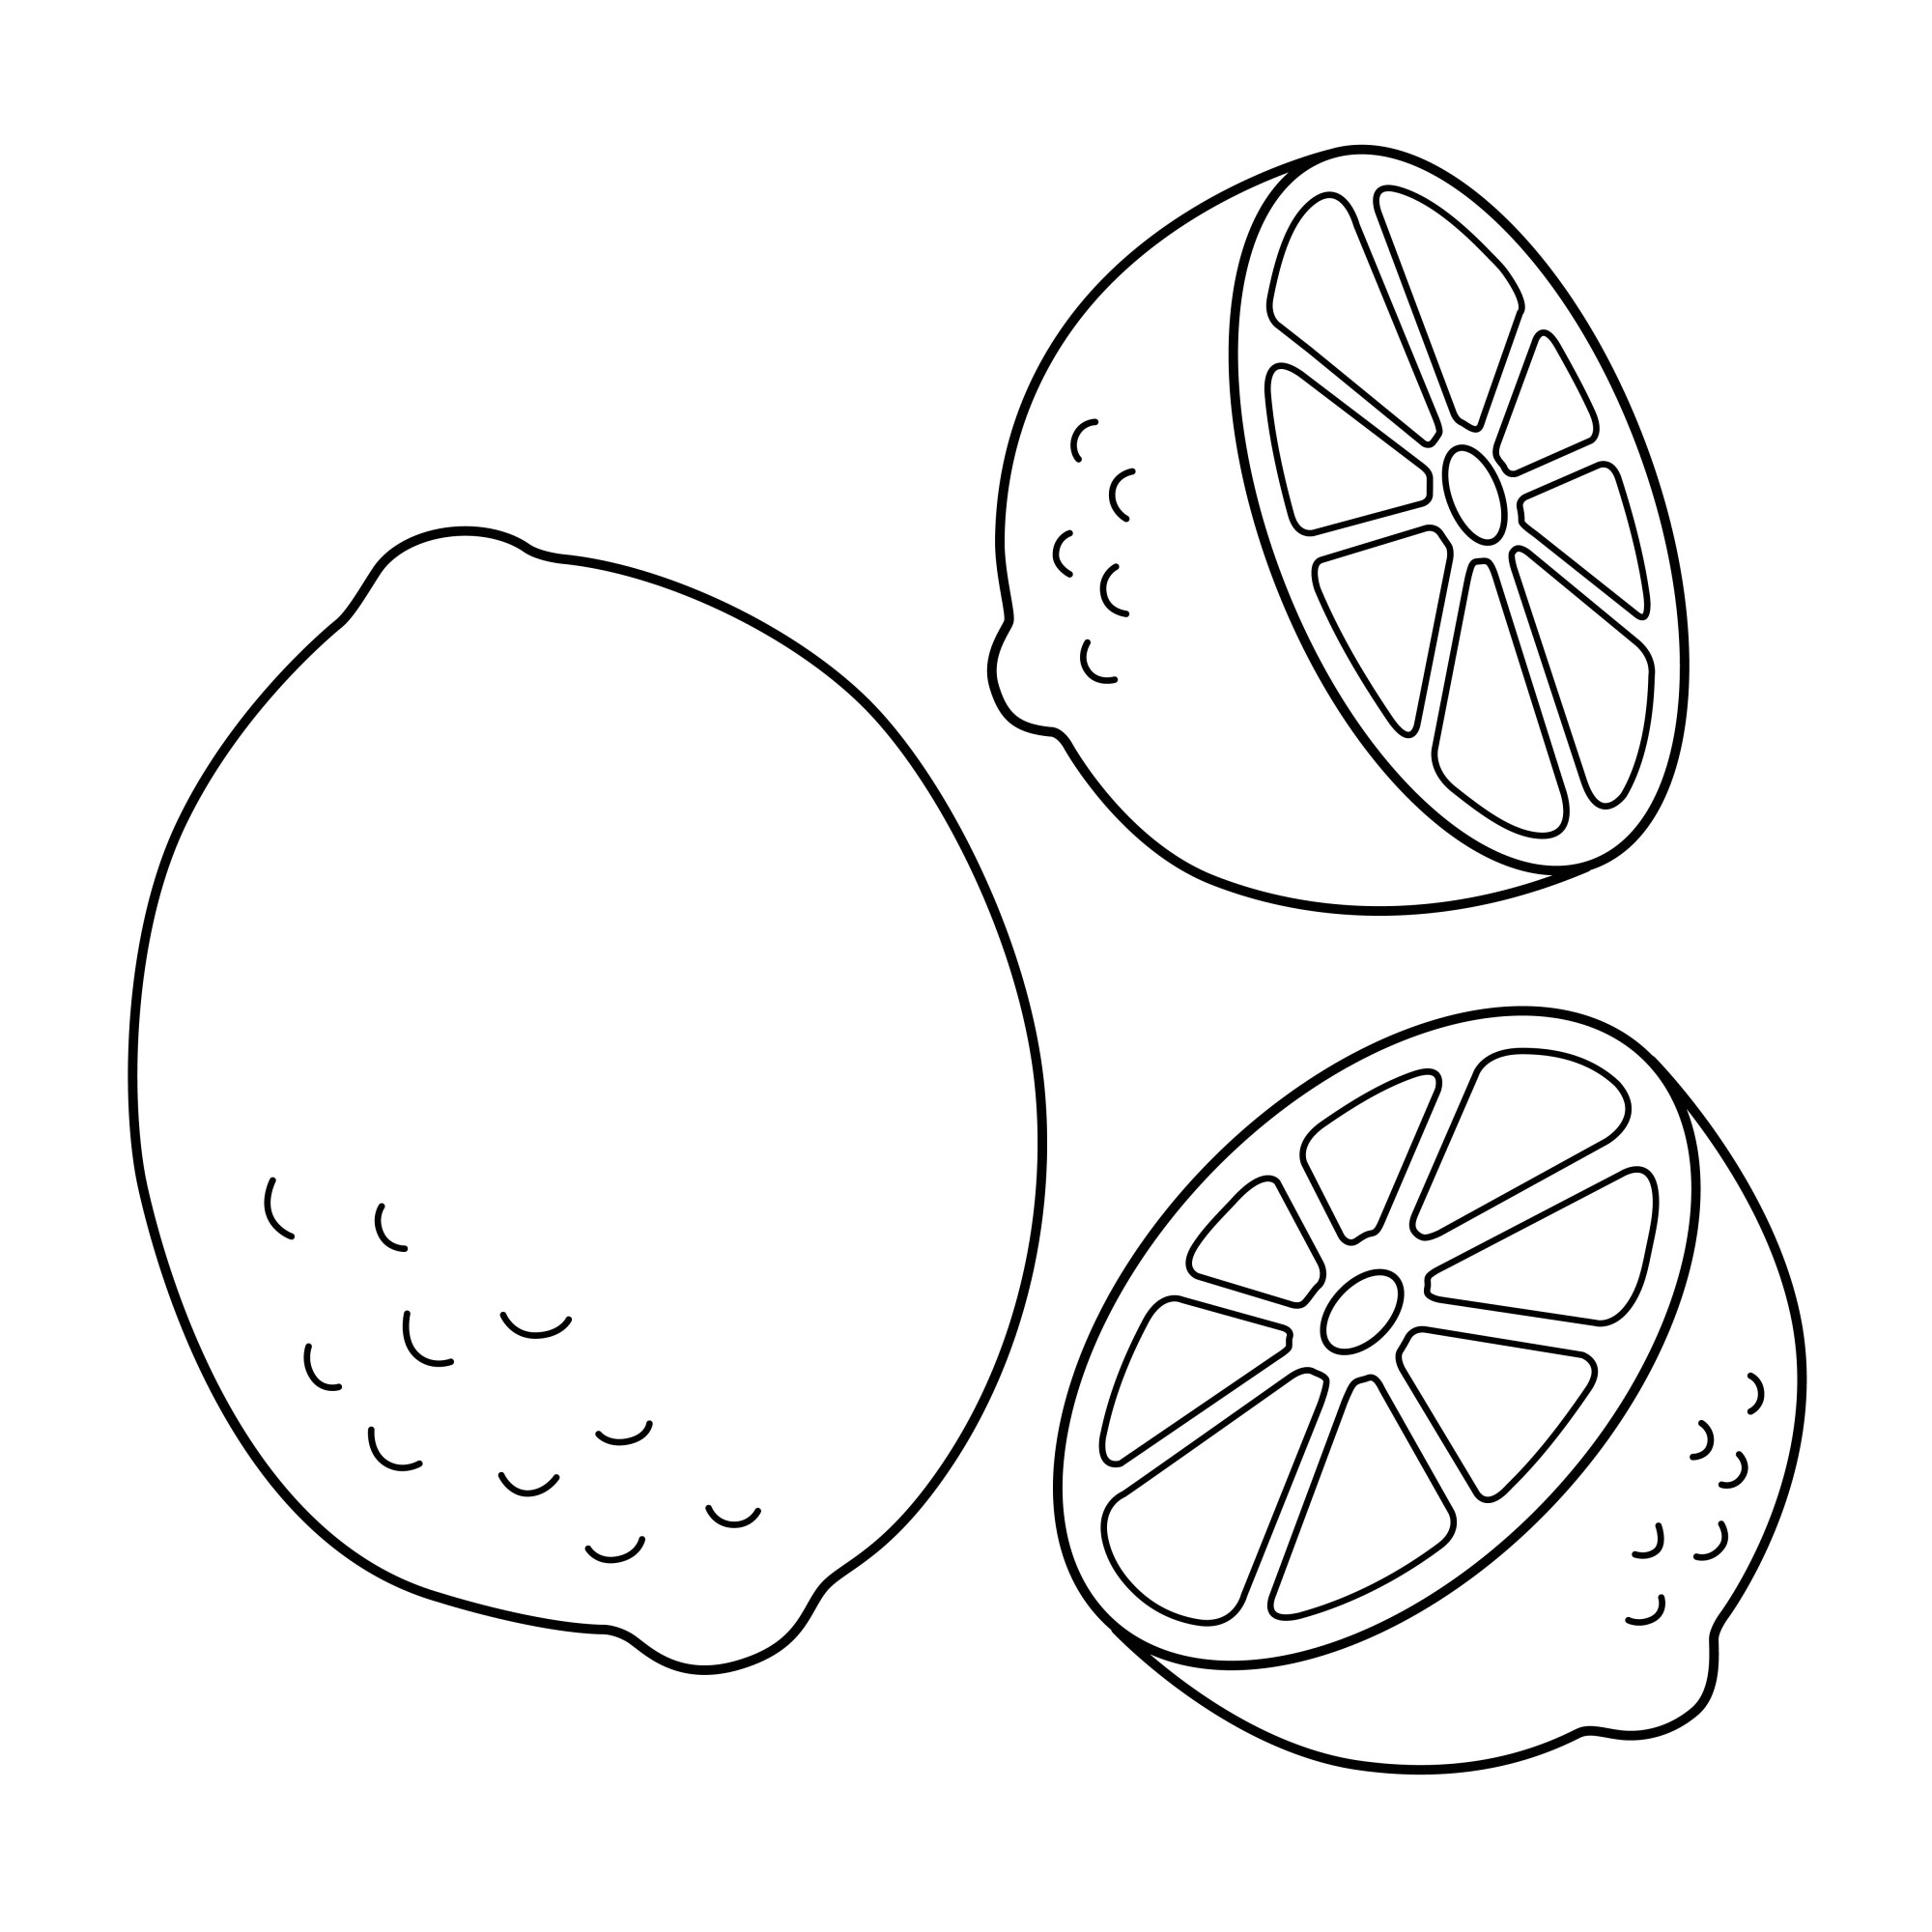 Раскраска для детей: освежающий лимон с половинками